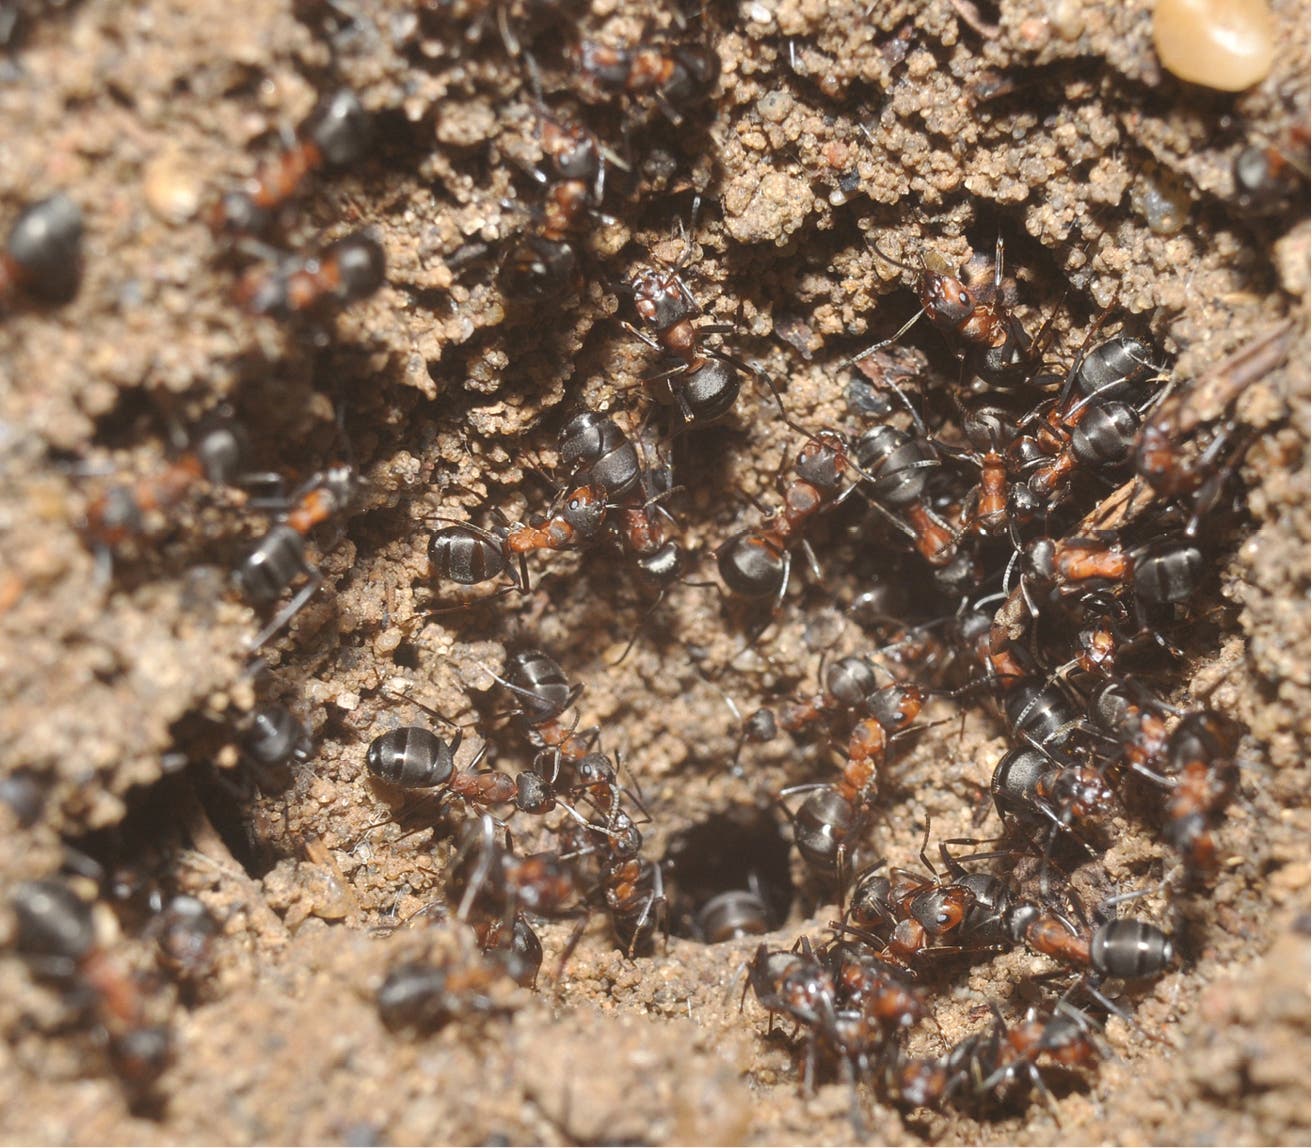 Ameisenarbeiterinnen räumen emsig den Kolonieeingang frei 